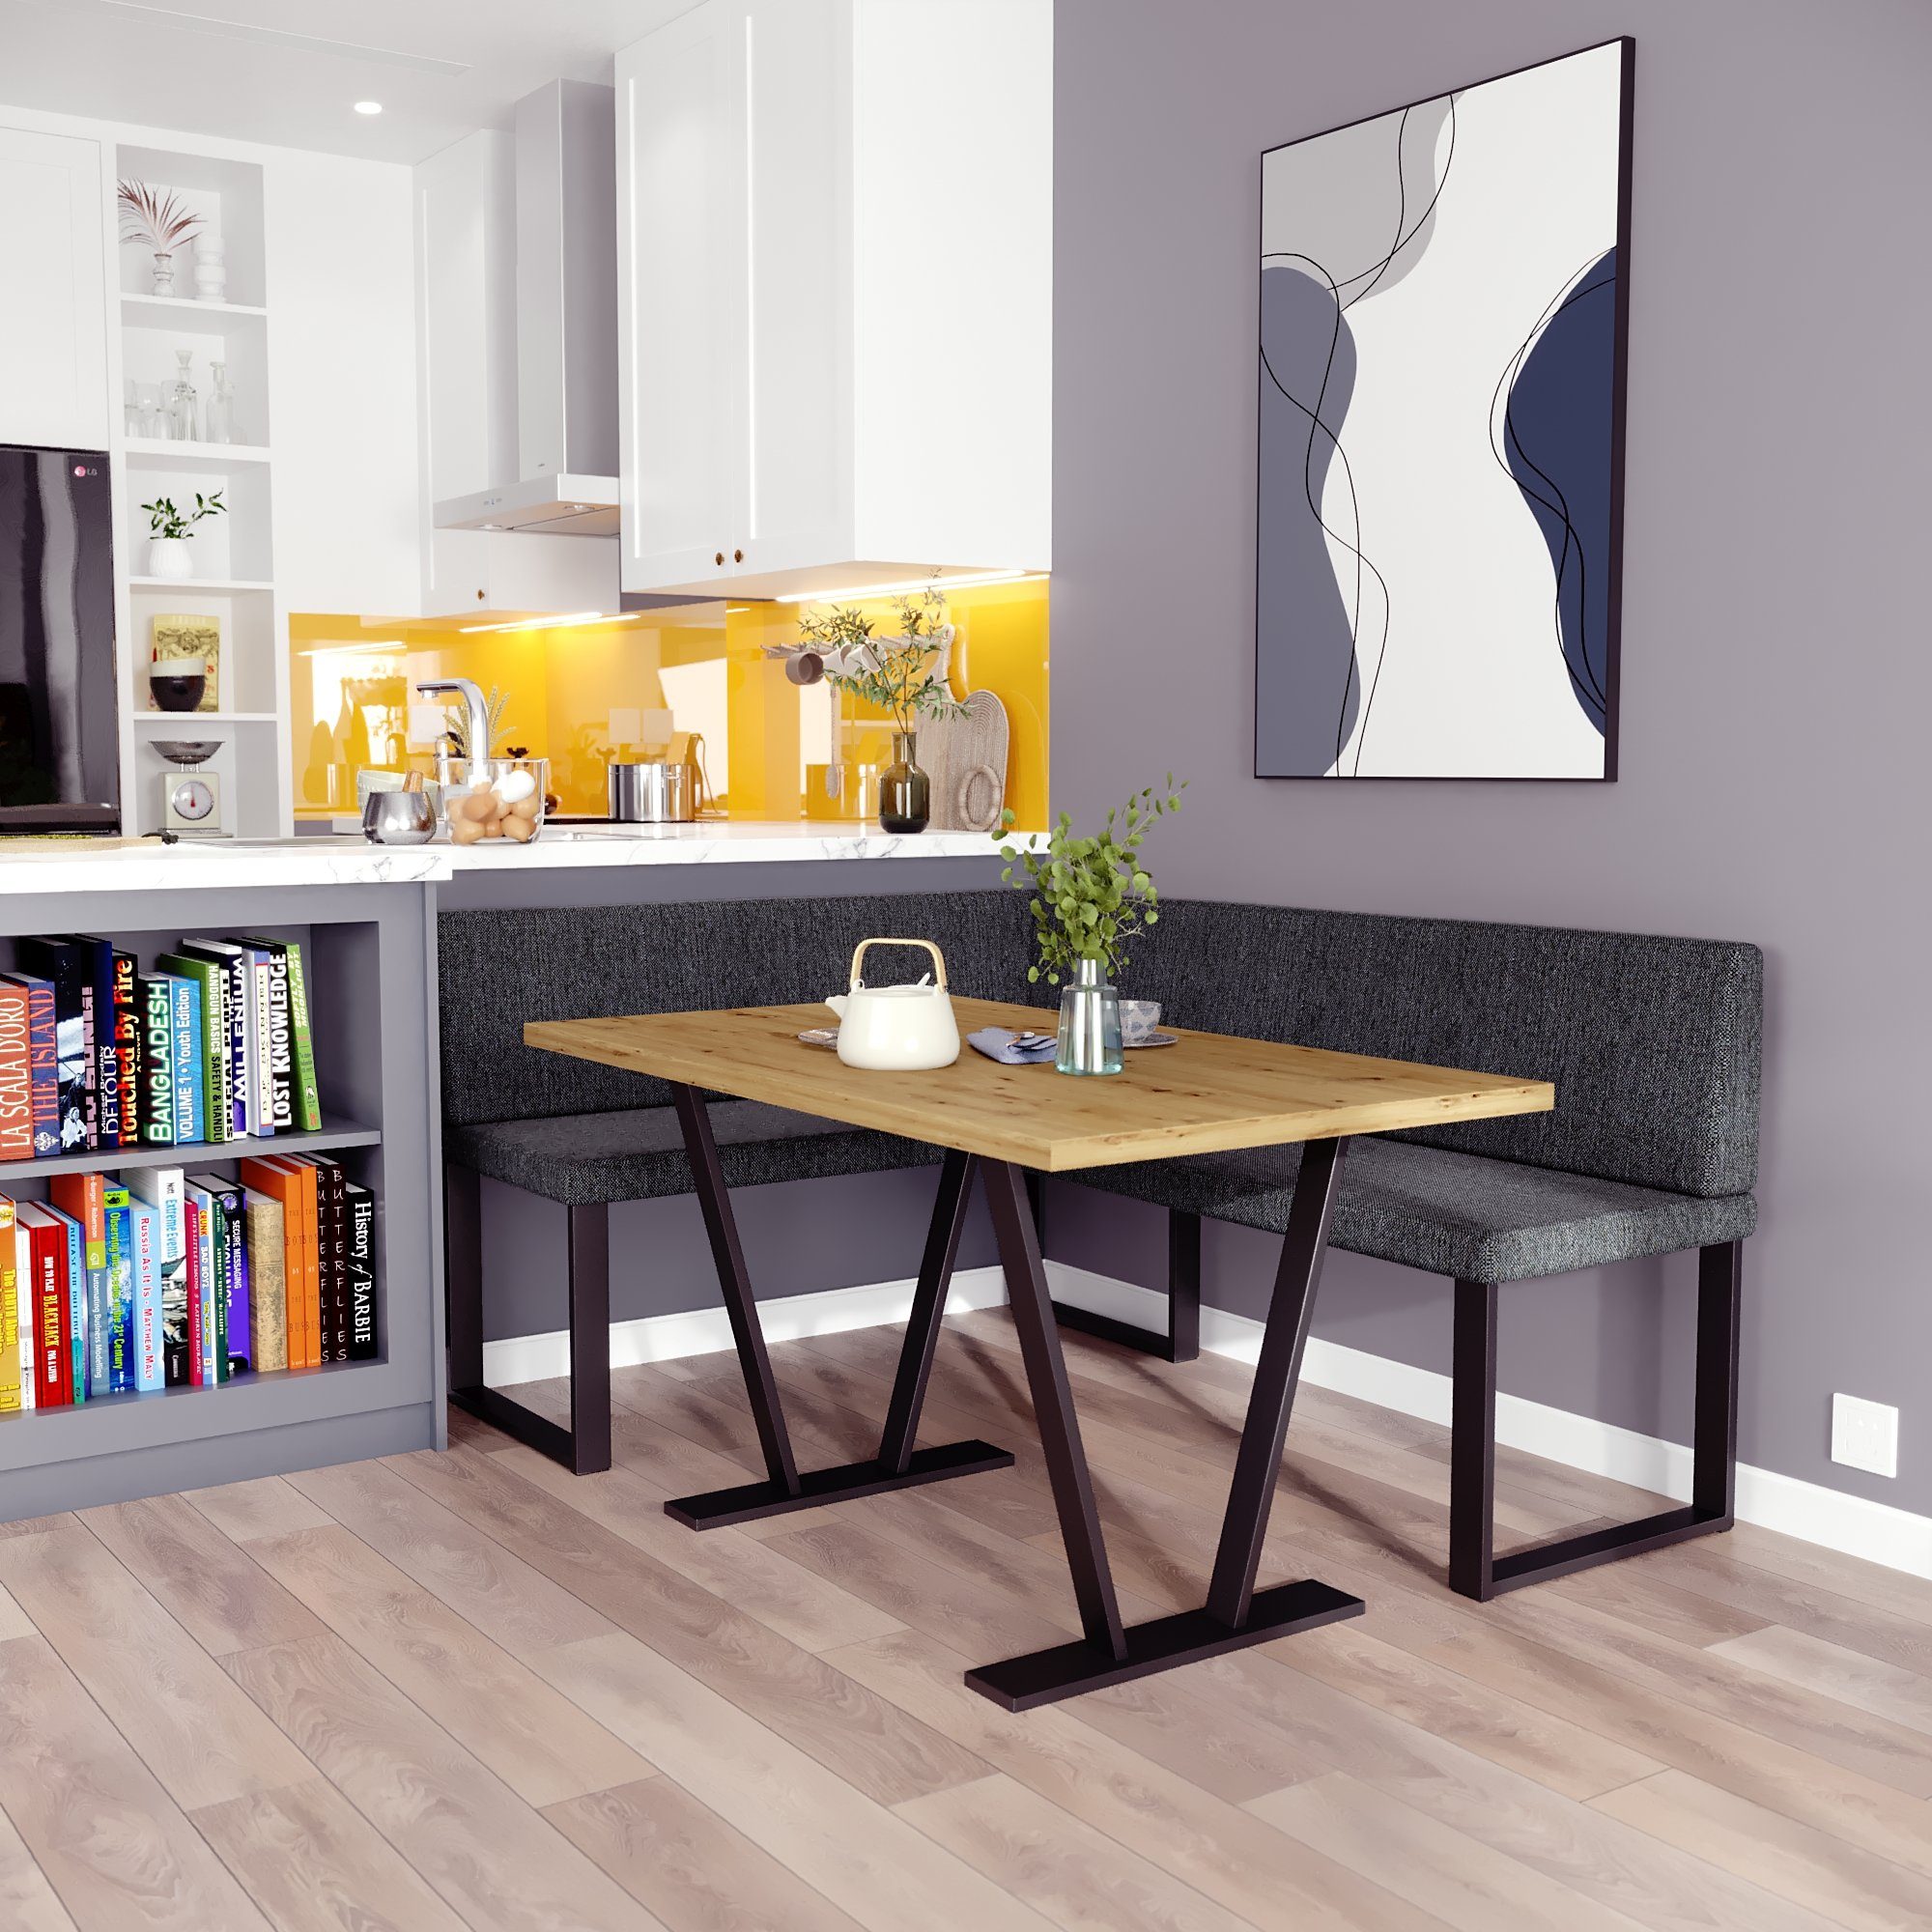 sofa4you Eckbankgruppe Alina Metall mit Tisch, Moderne Sitzecke perfekt für Ihr Esszimmer, Küche (128x168/142x196) grau